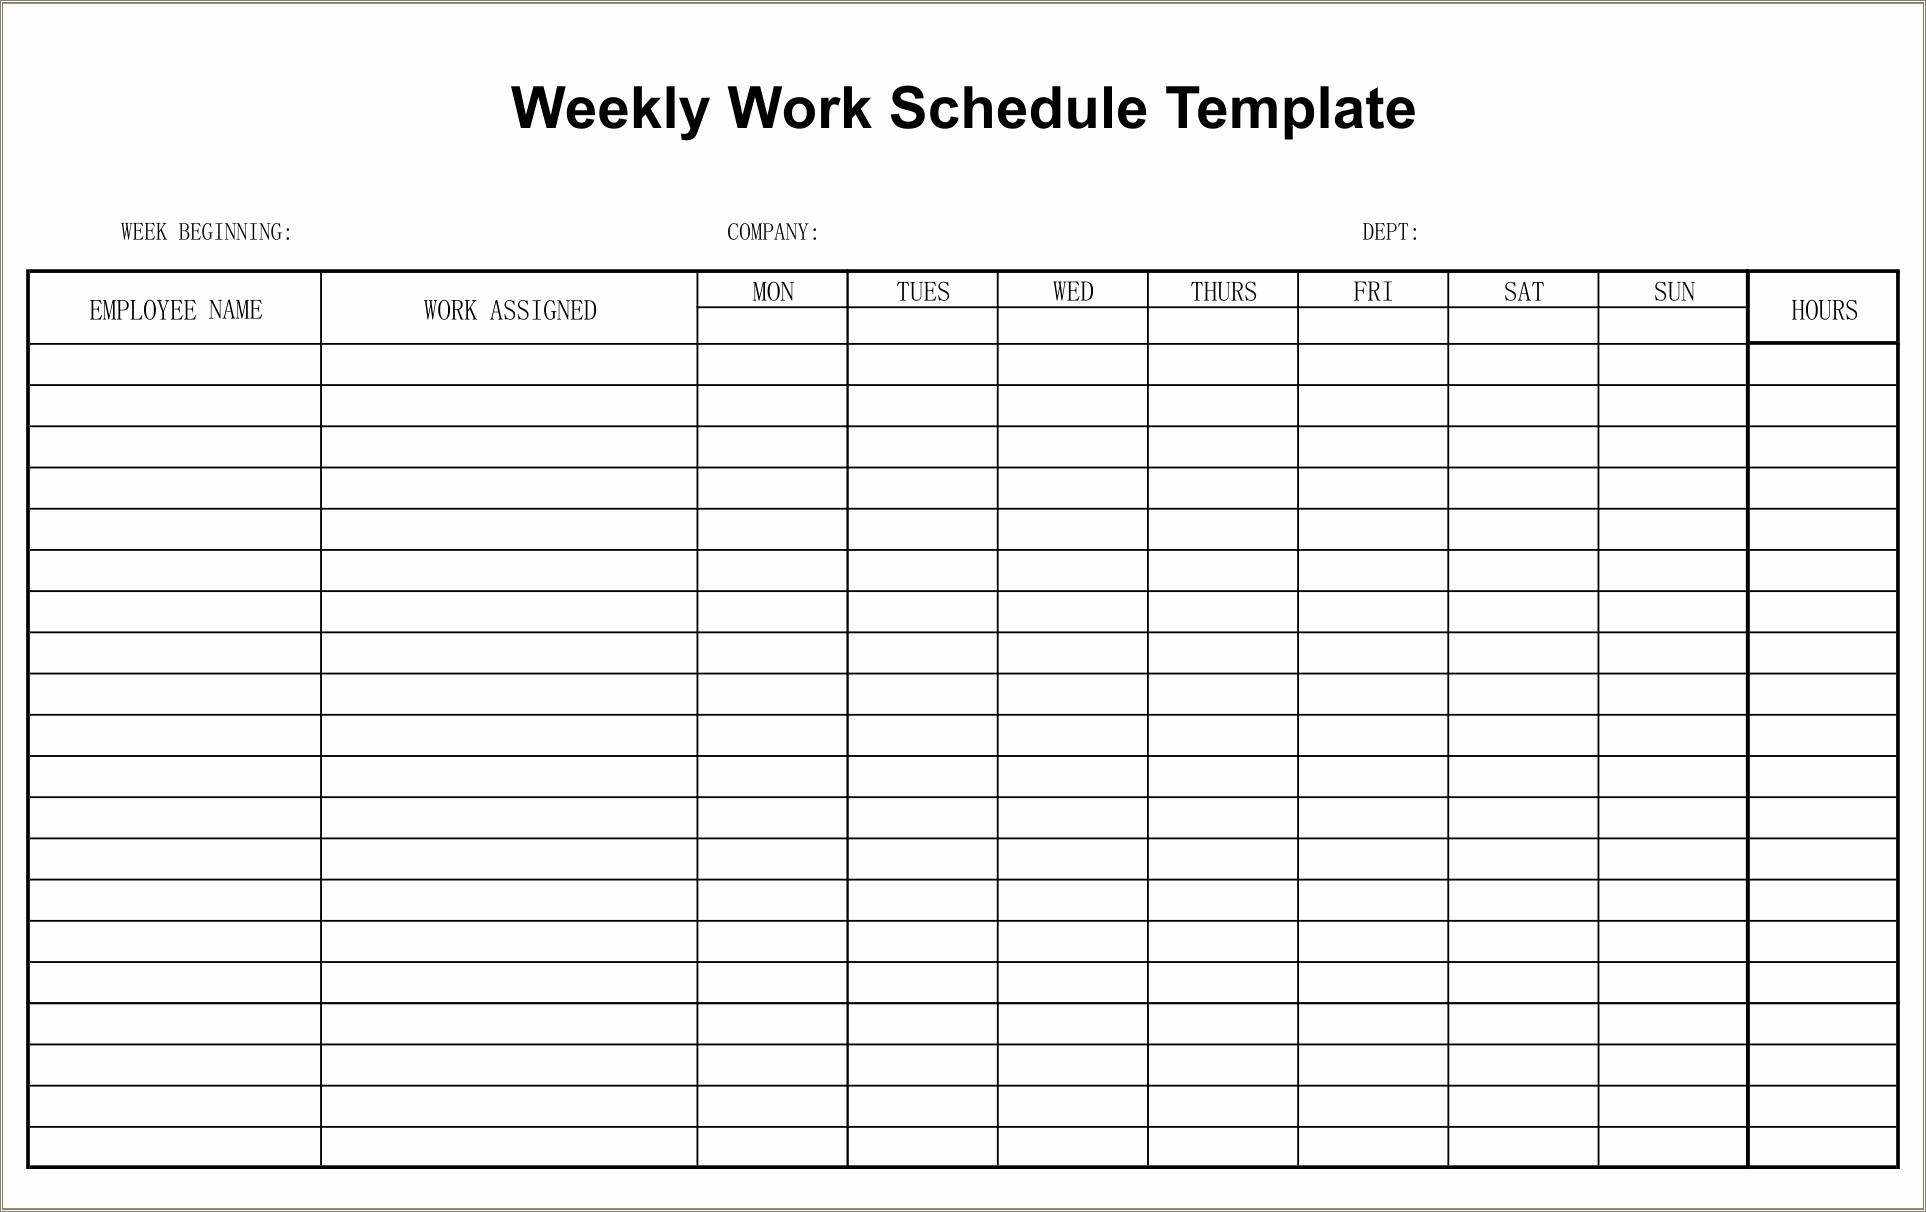 Free Blank Printable Work Order Template